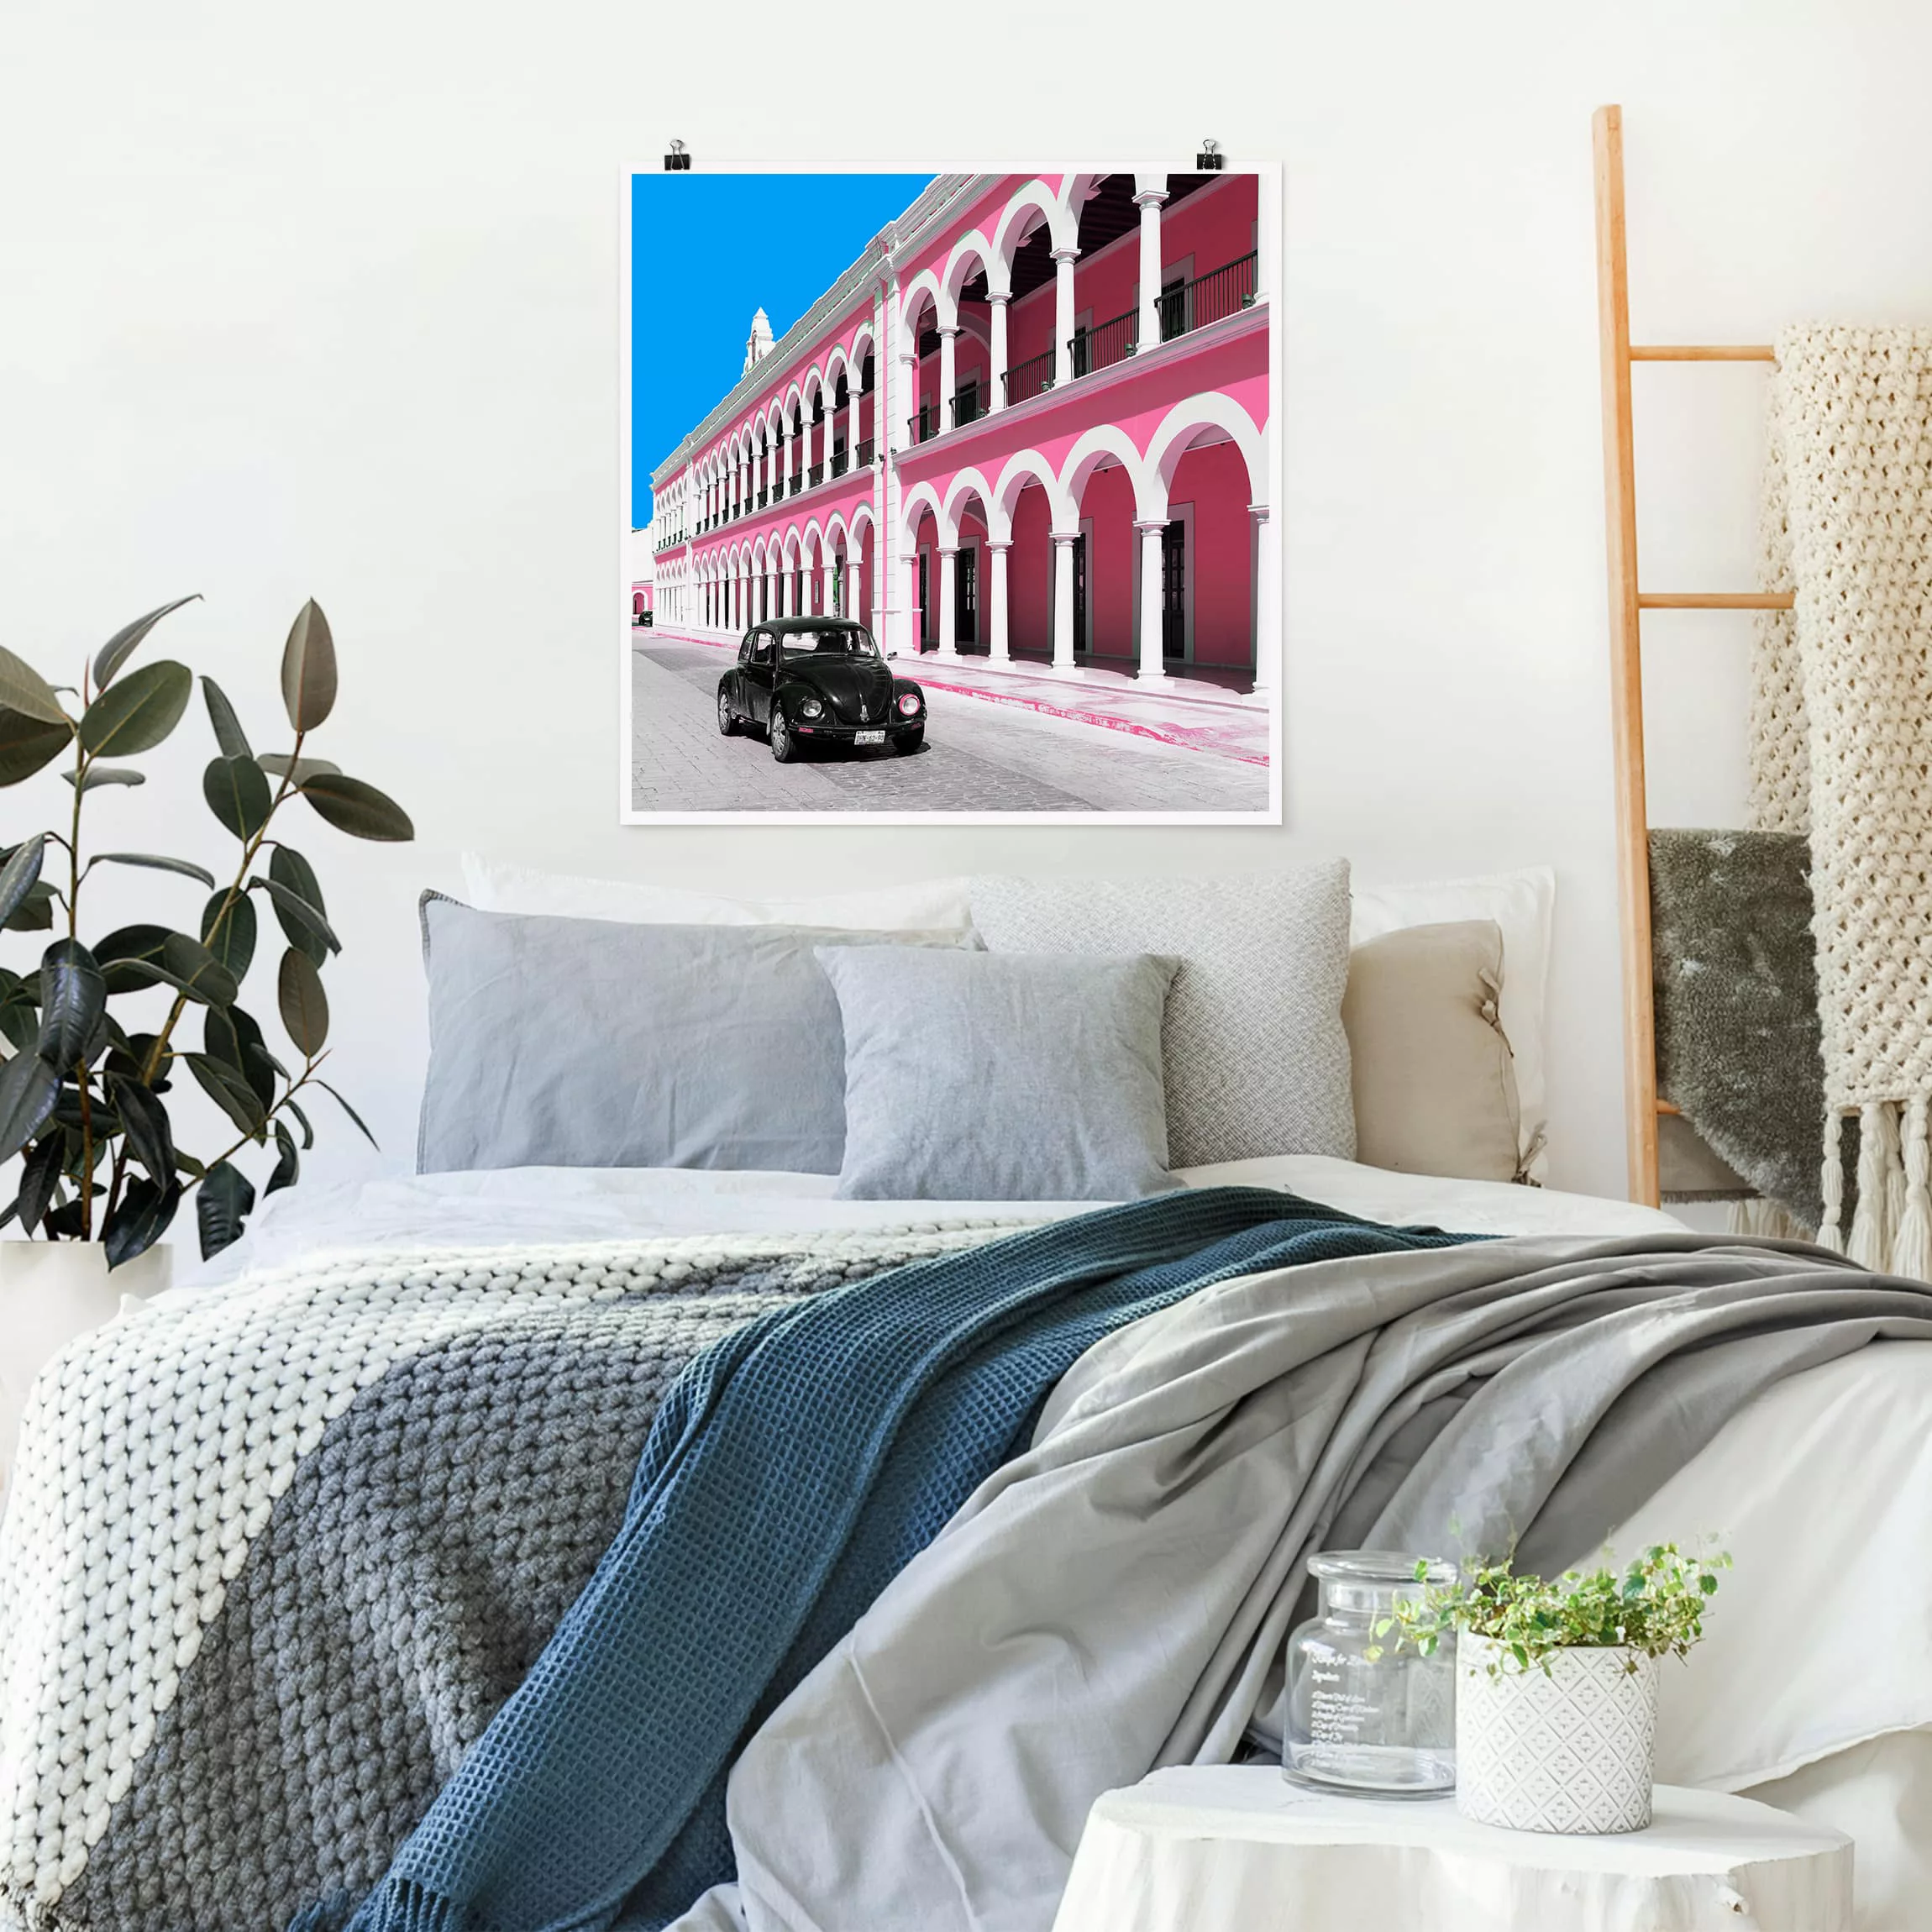 Poster Architektur & Skyline - Quadrat Schwarzer Beetle Pinke Fassade günstig online kaufen